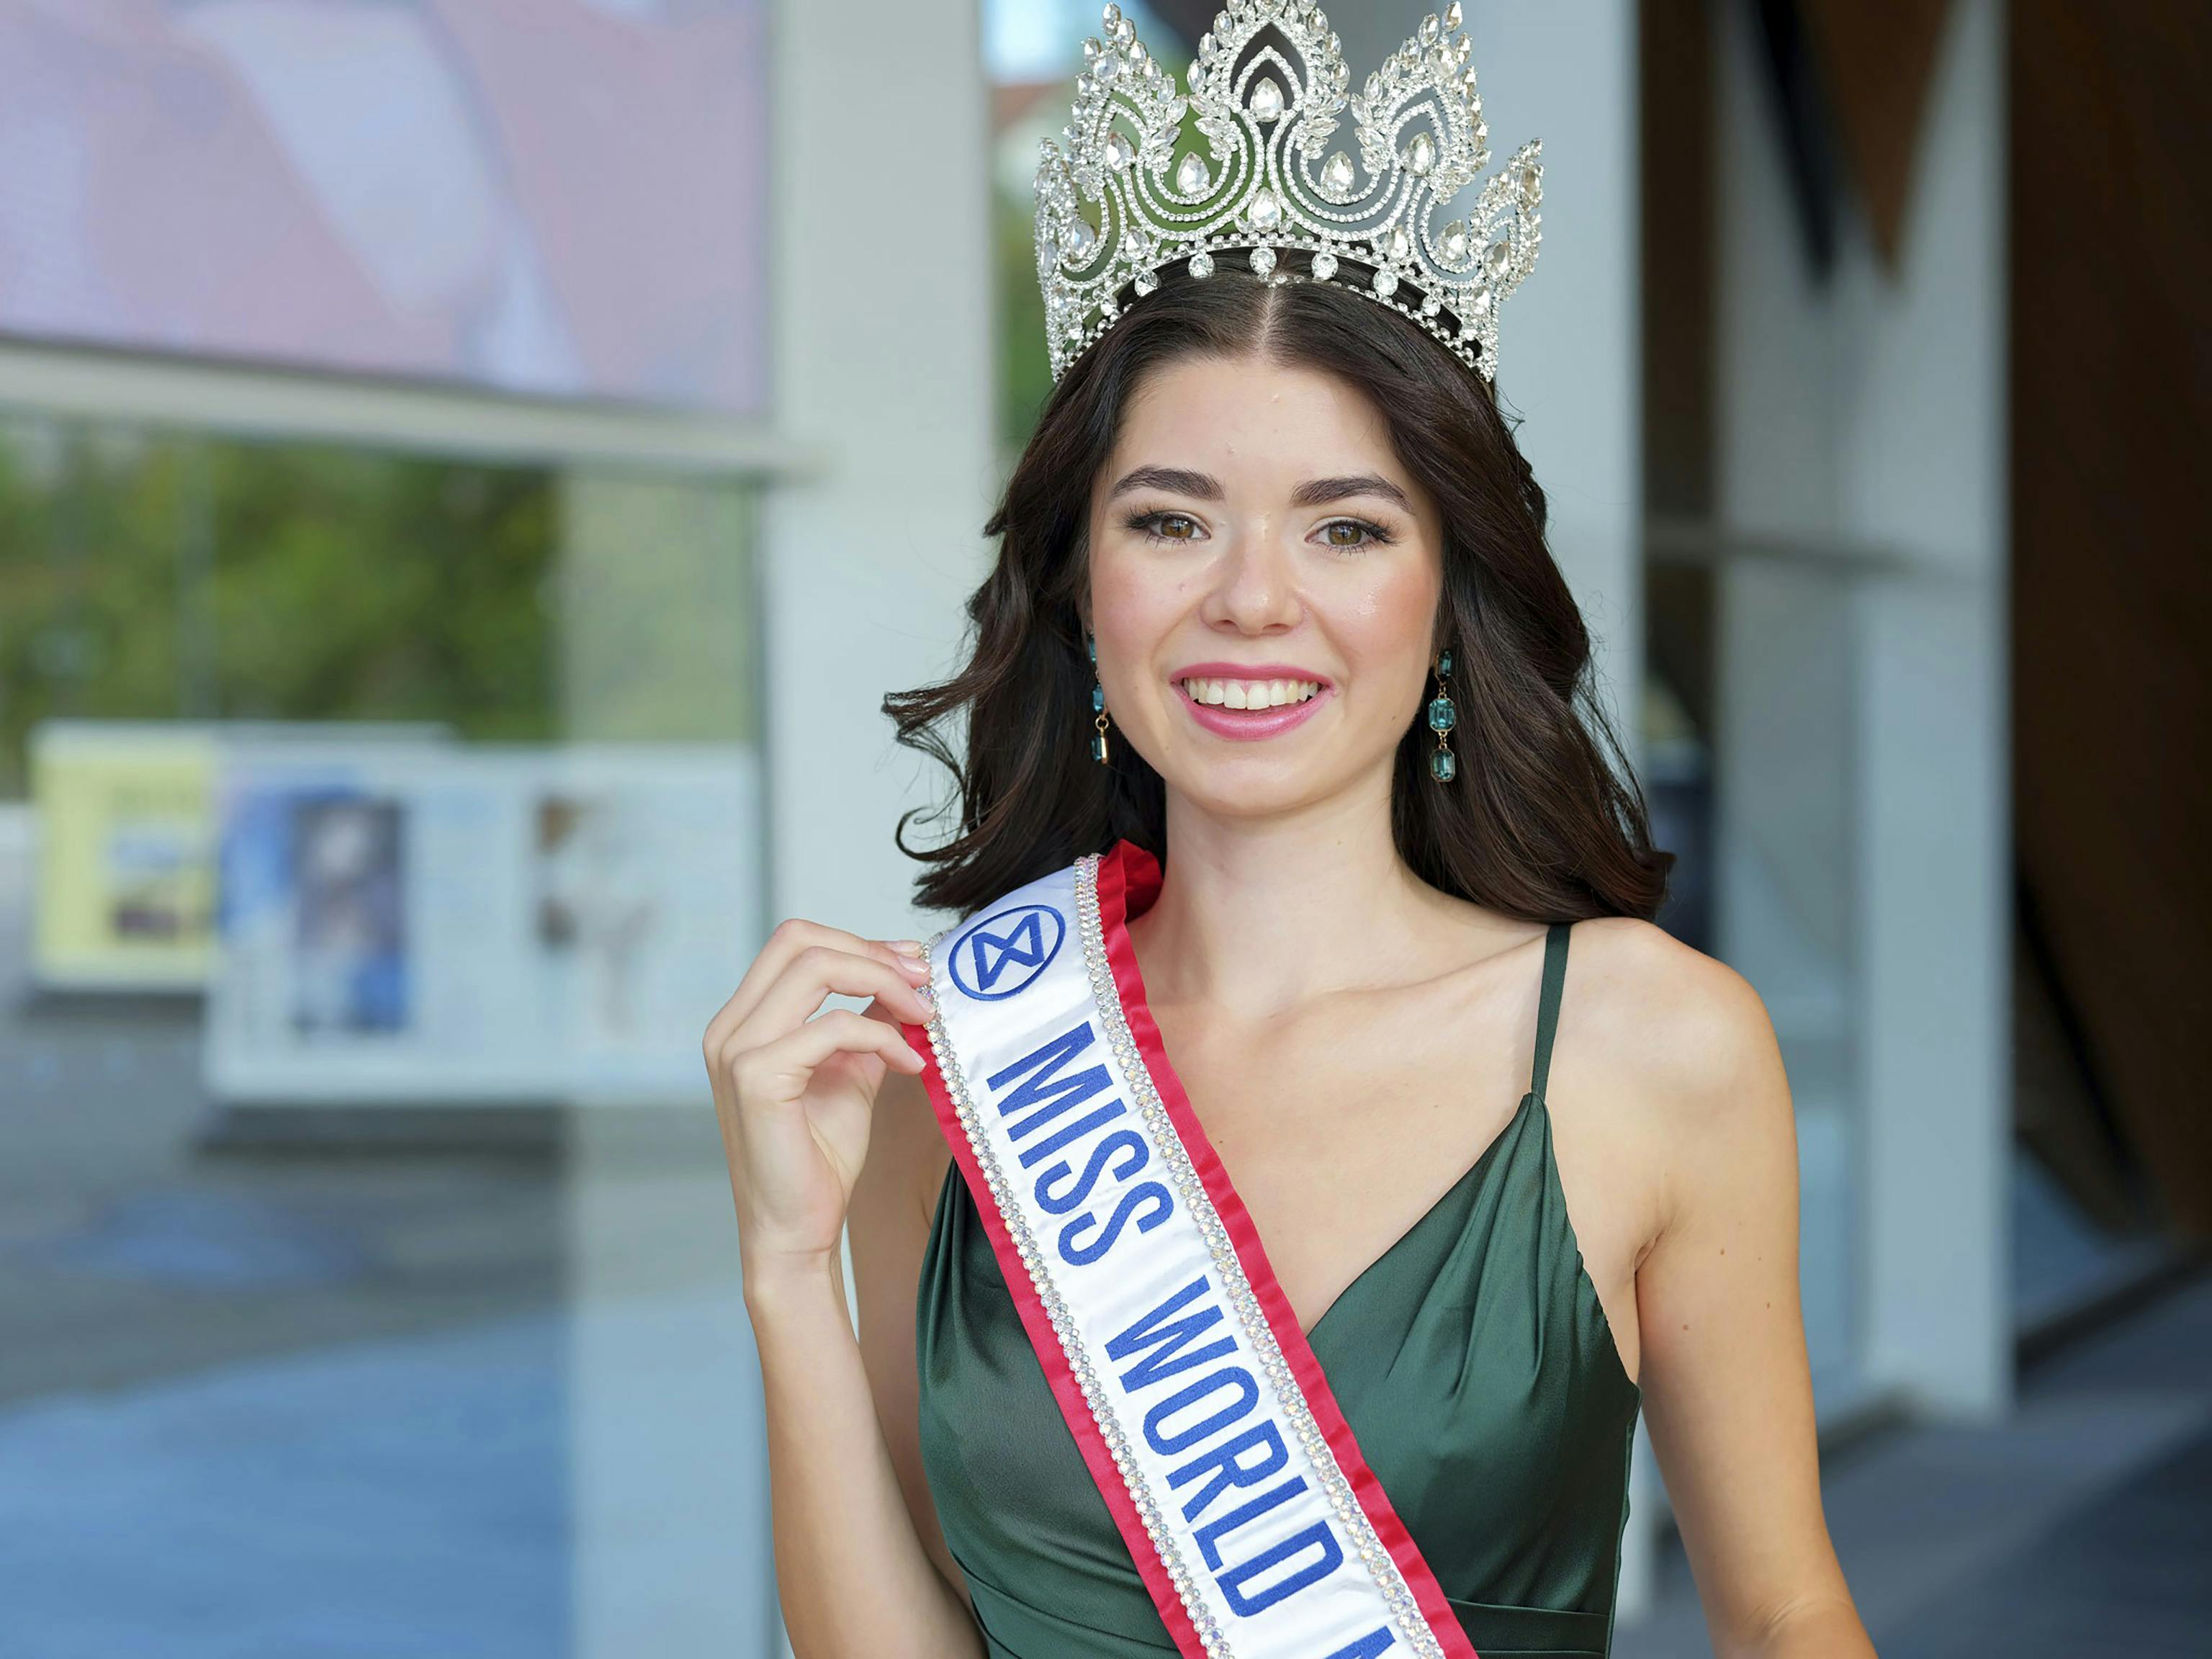 Andrea Farias fra Kristiansand er Norges kandidat til Miss World i 2023/24.   Reportasje laget av Svend Aage Madsen